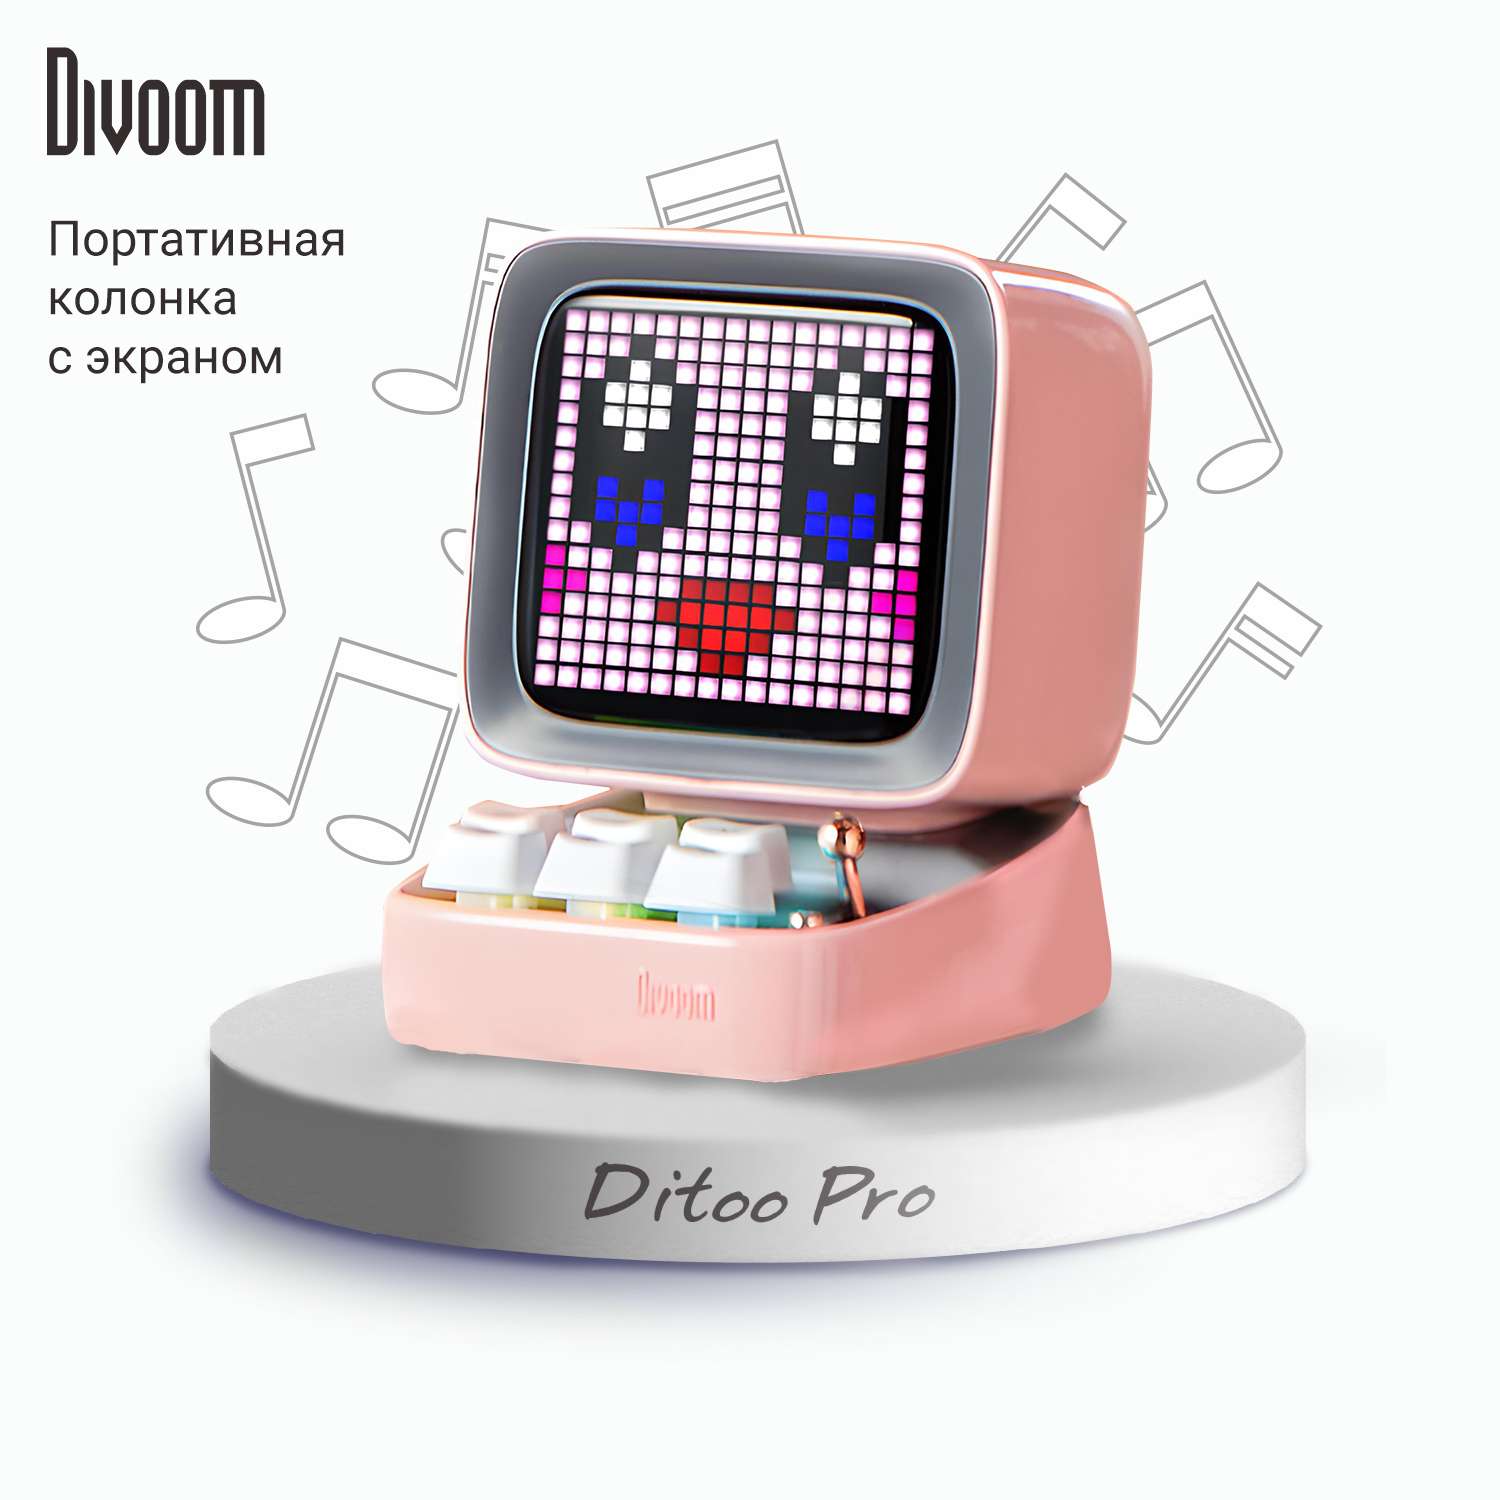 Беспроводная колонка DIVOOM портативная Ditoo Pro розовая с пиксельным LED-дисплеем - фото 1